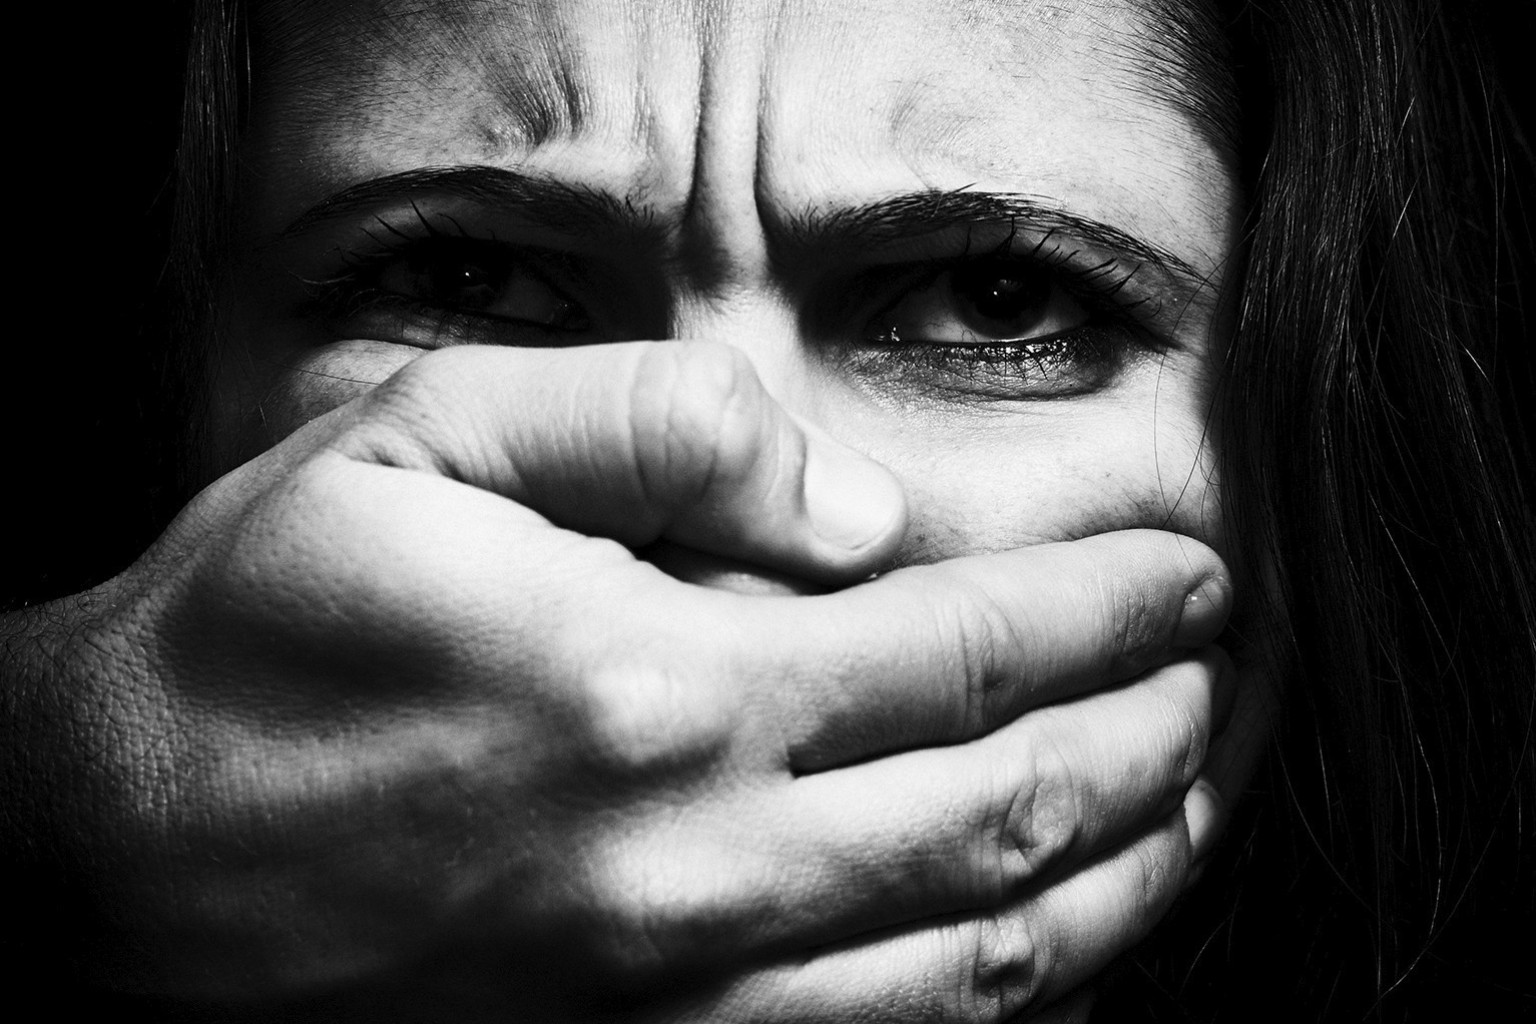 Il femminicidio spacciato per delitto d'onore zittisce le proteste di vittime innocenti, ovvero le donne